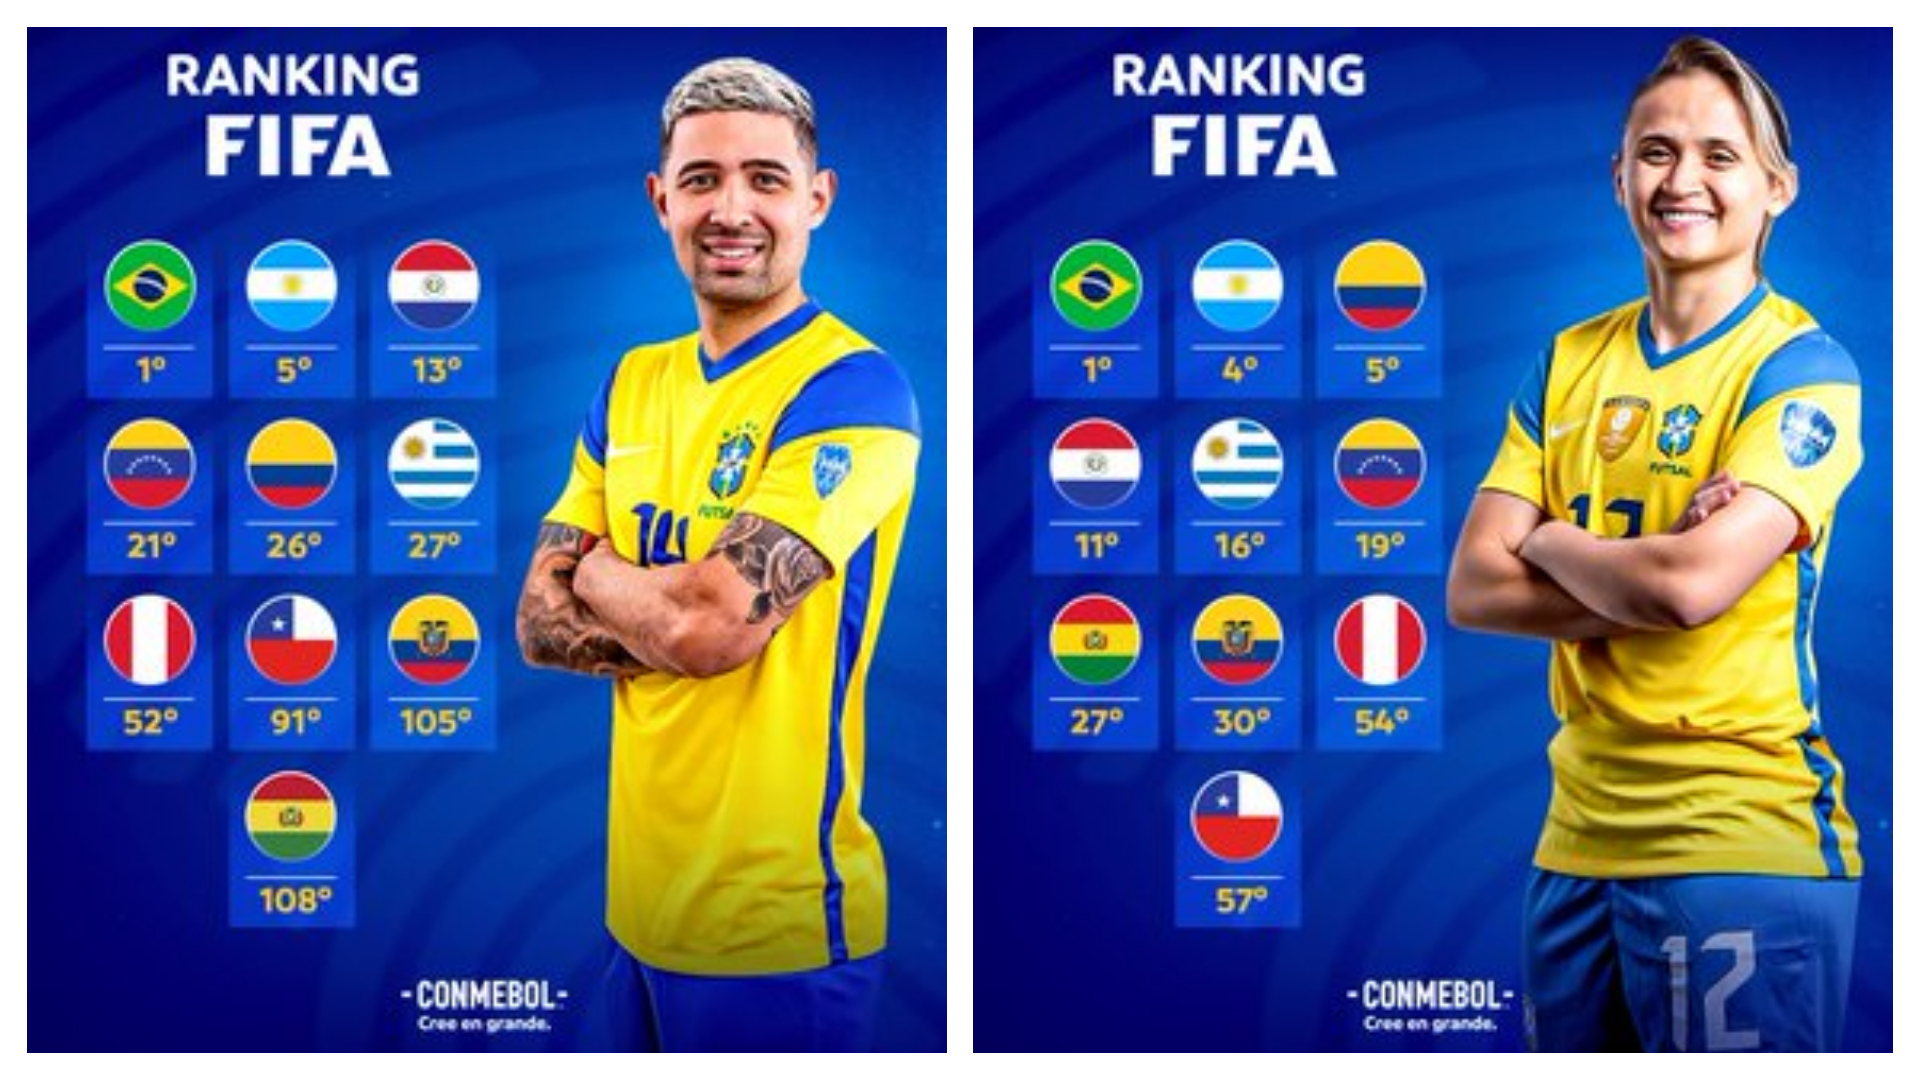 Vinotinto masculina de FUTSAL inauguró el primer ranking FIFA en la posición 21